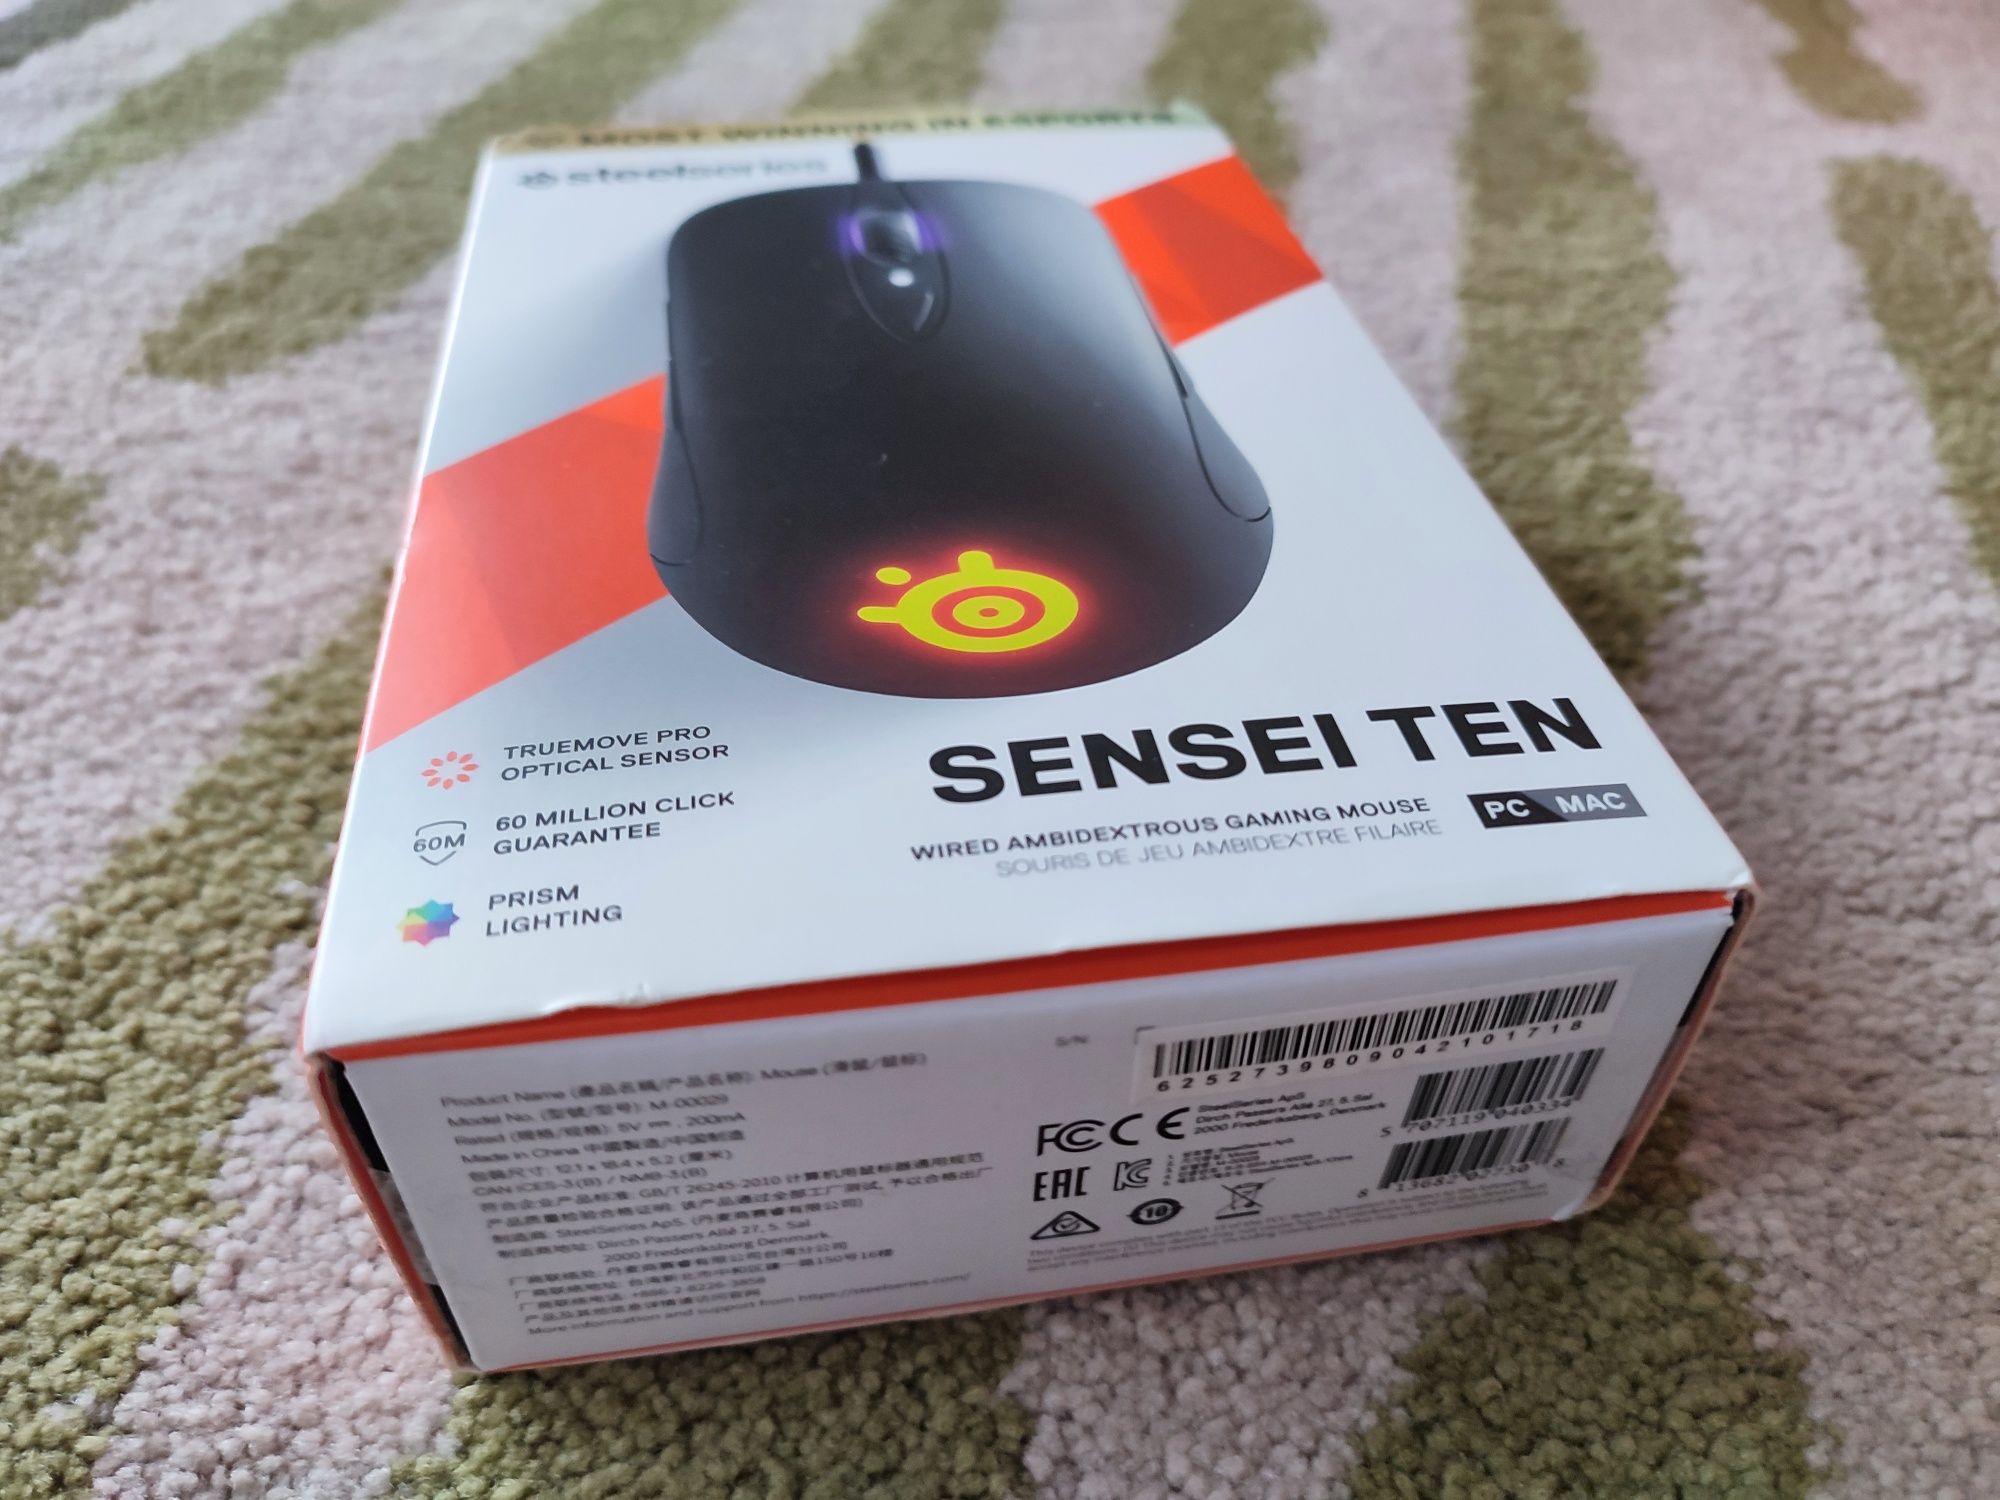 Steelseries Sensei Ten. Nowa mysz gamingowa.